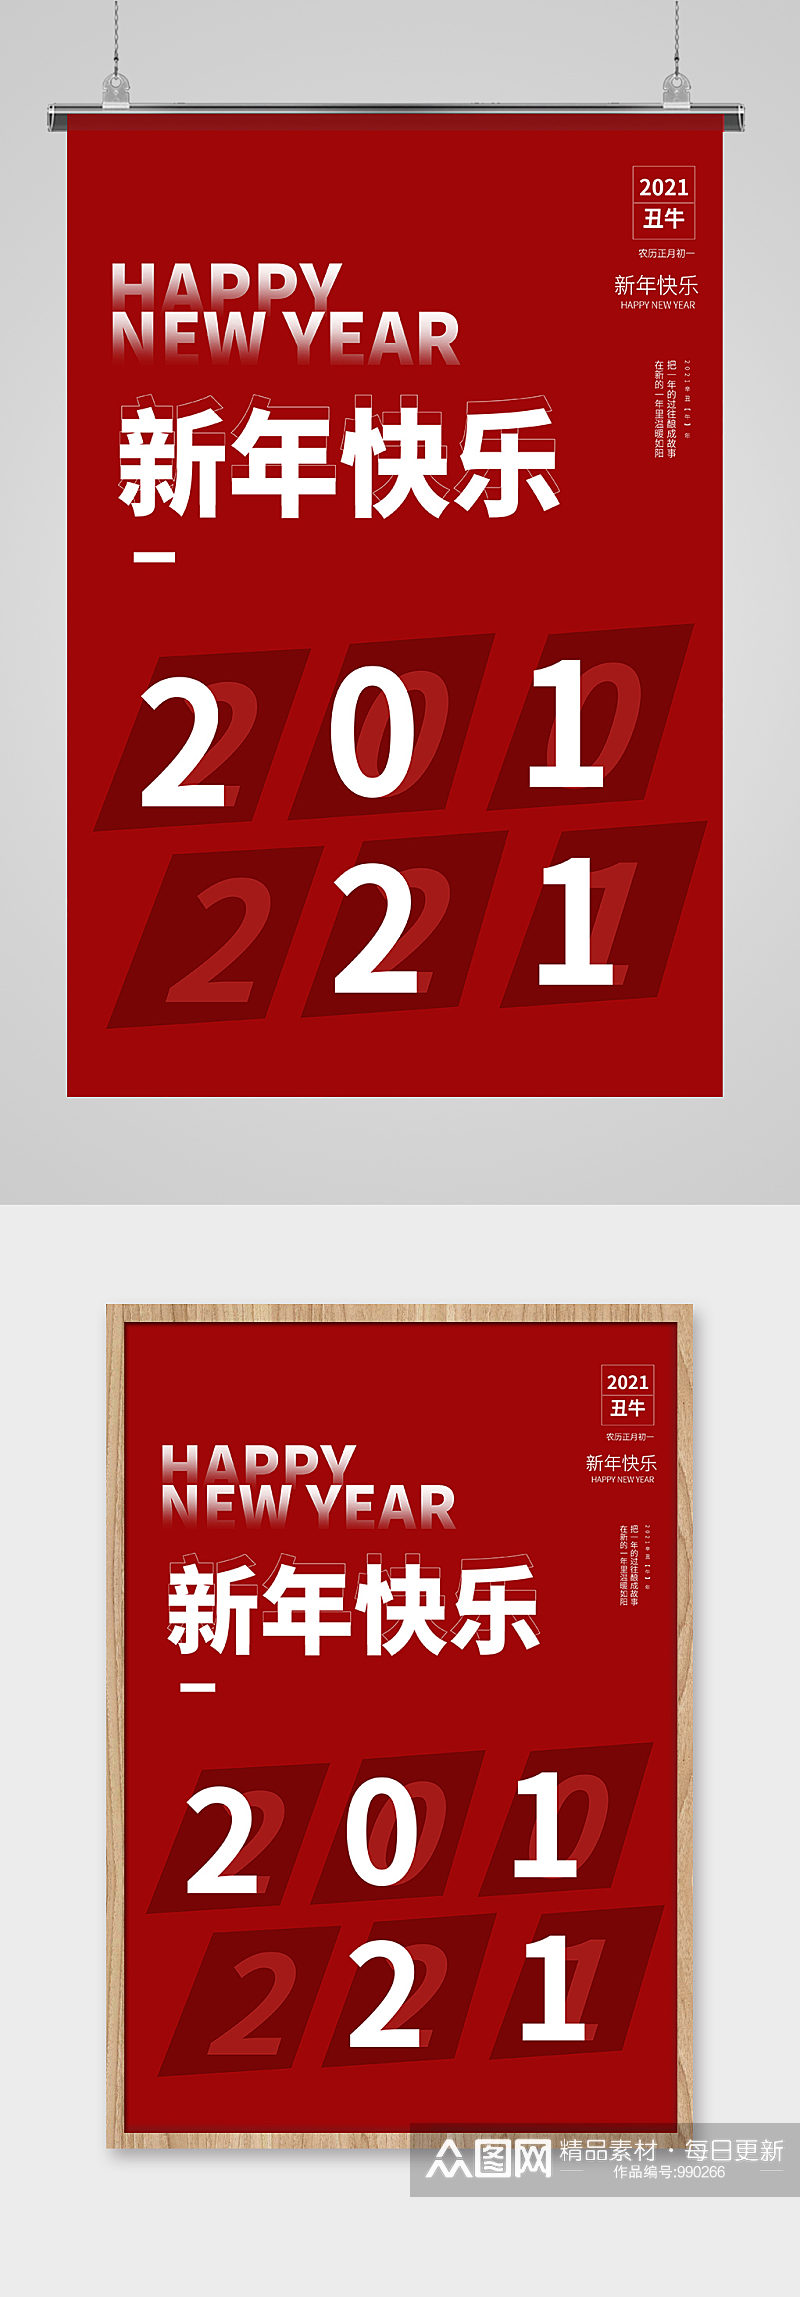 2021新年快乐文字红色极简海报素材